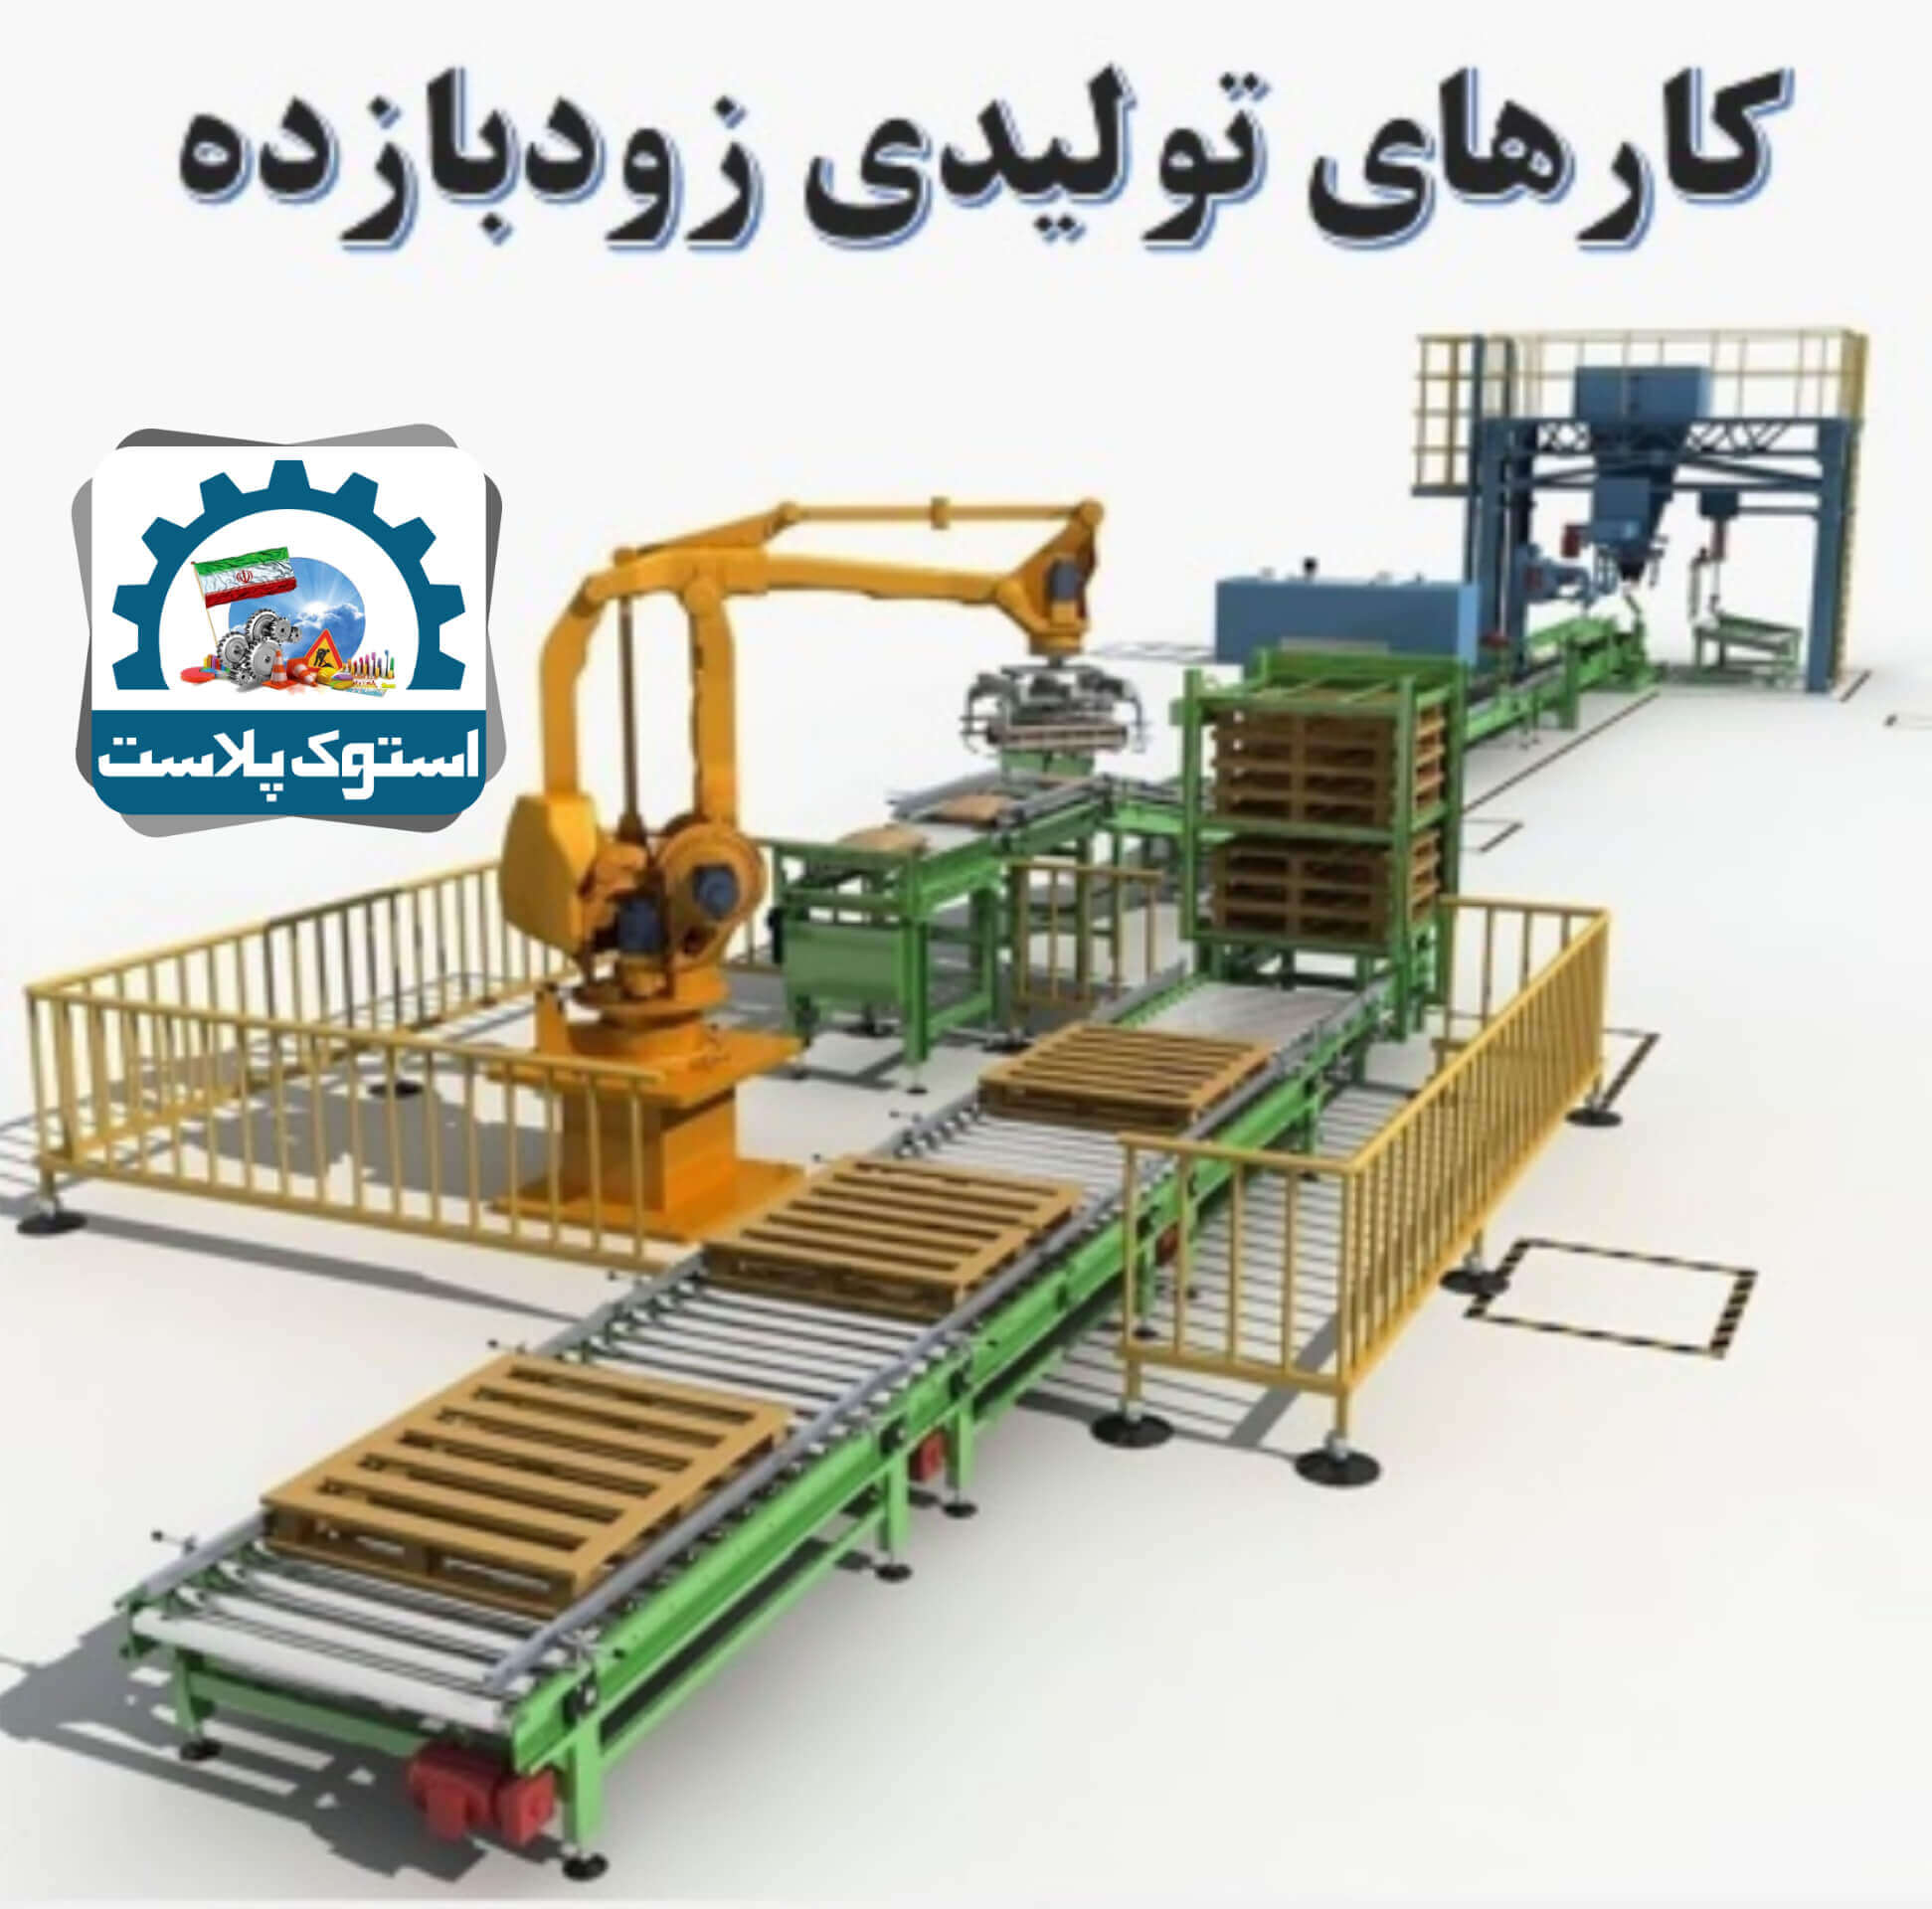 کارهای تولیدی زودبازده در ایران